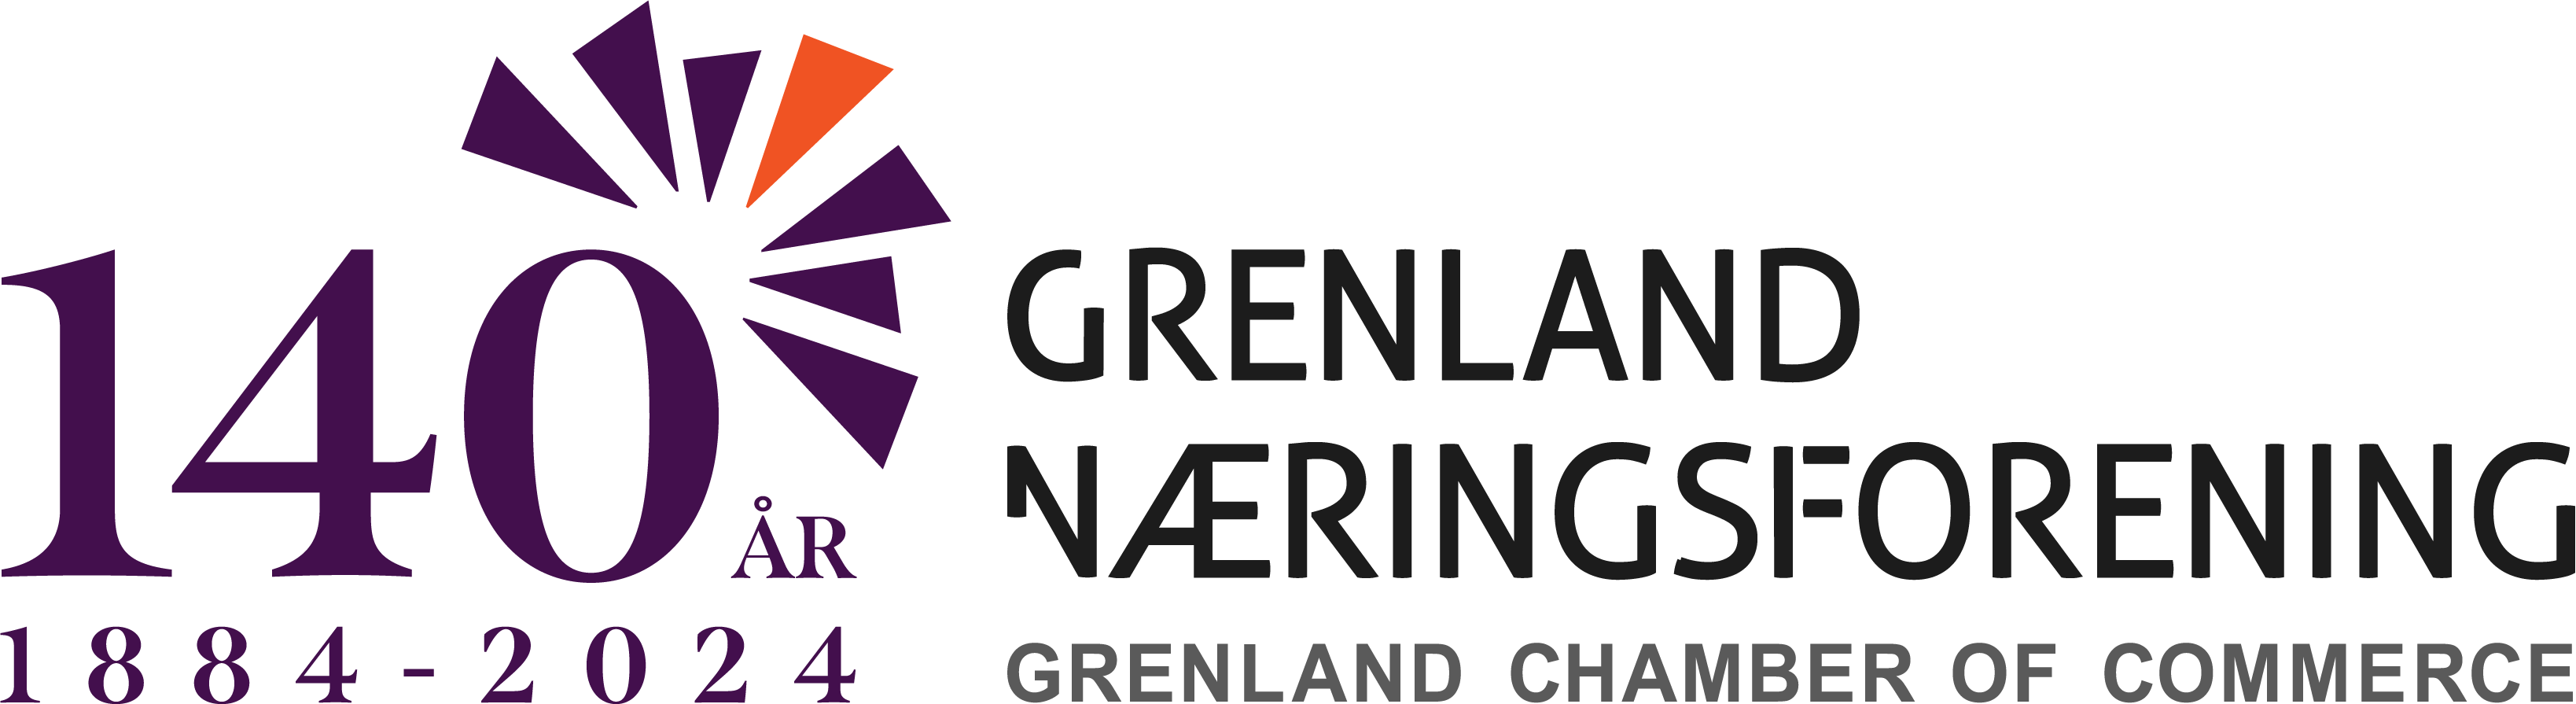 Grenland næringsforening